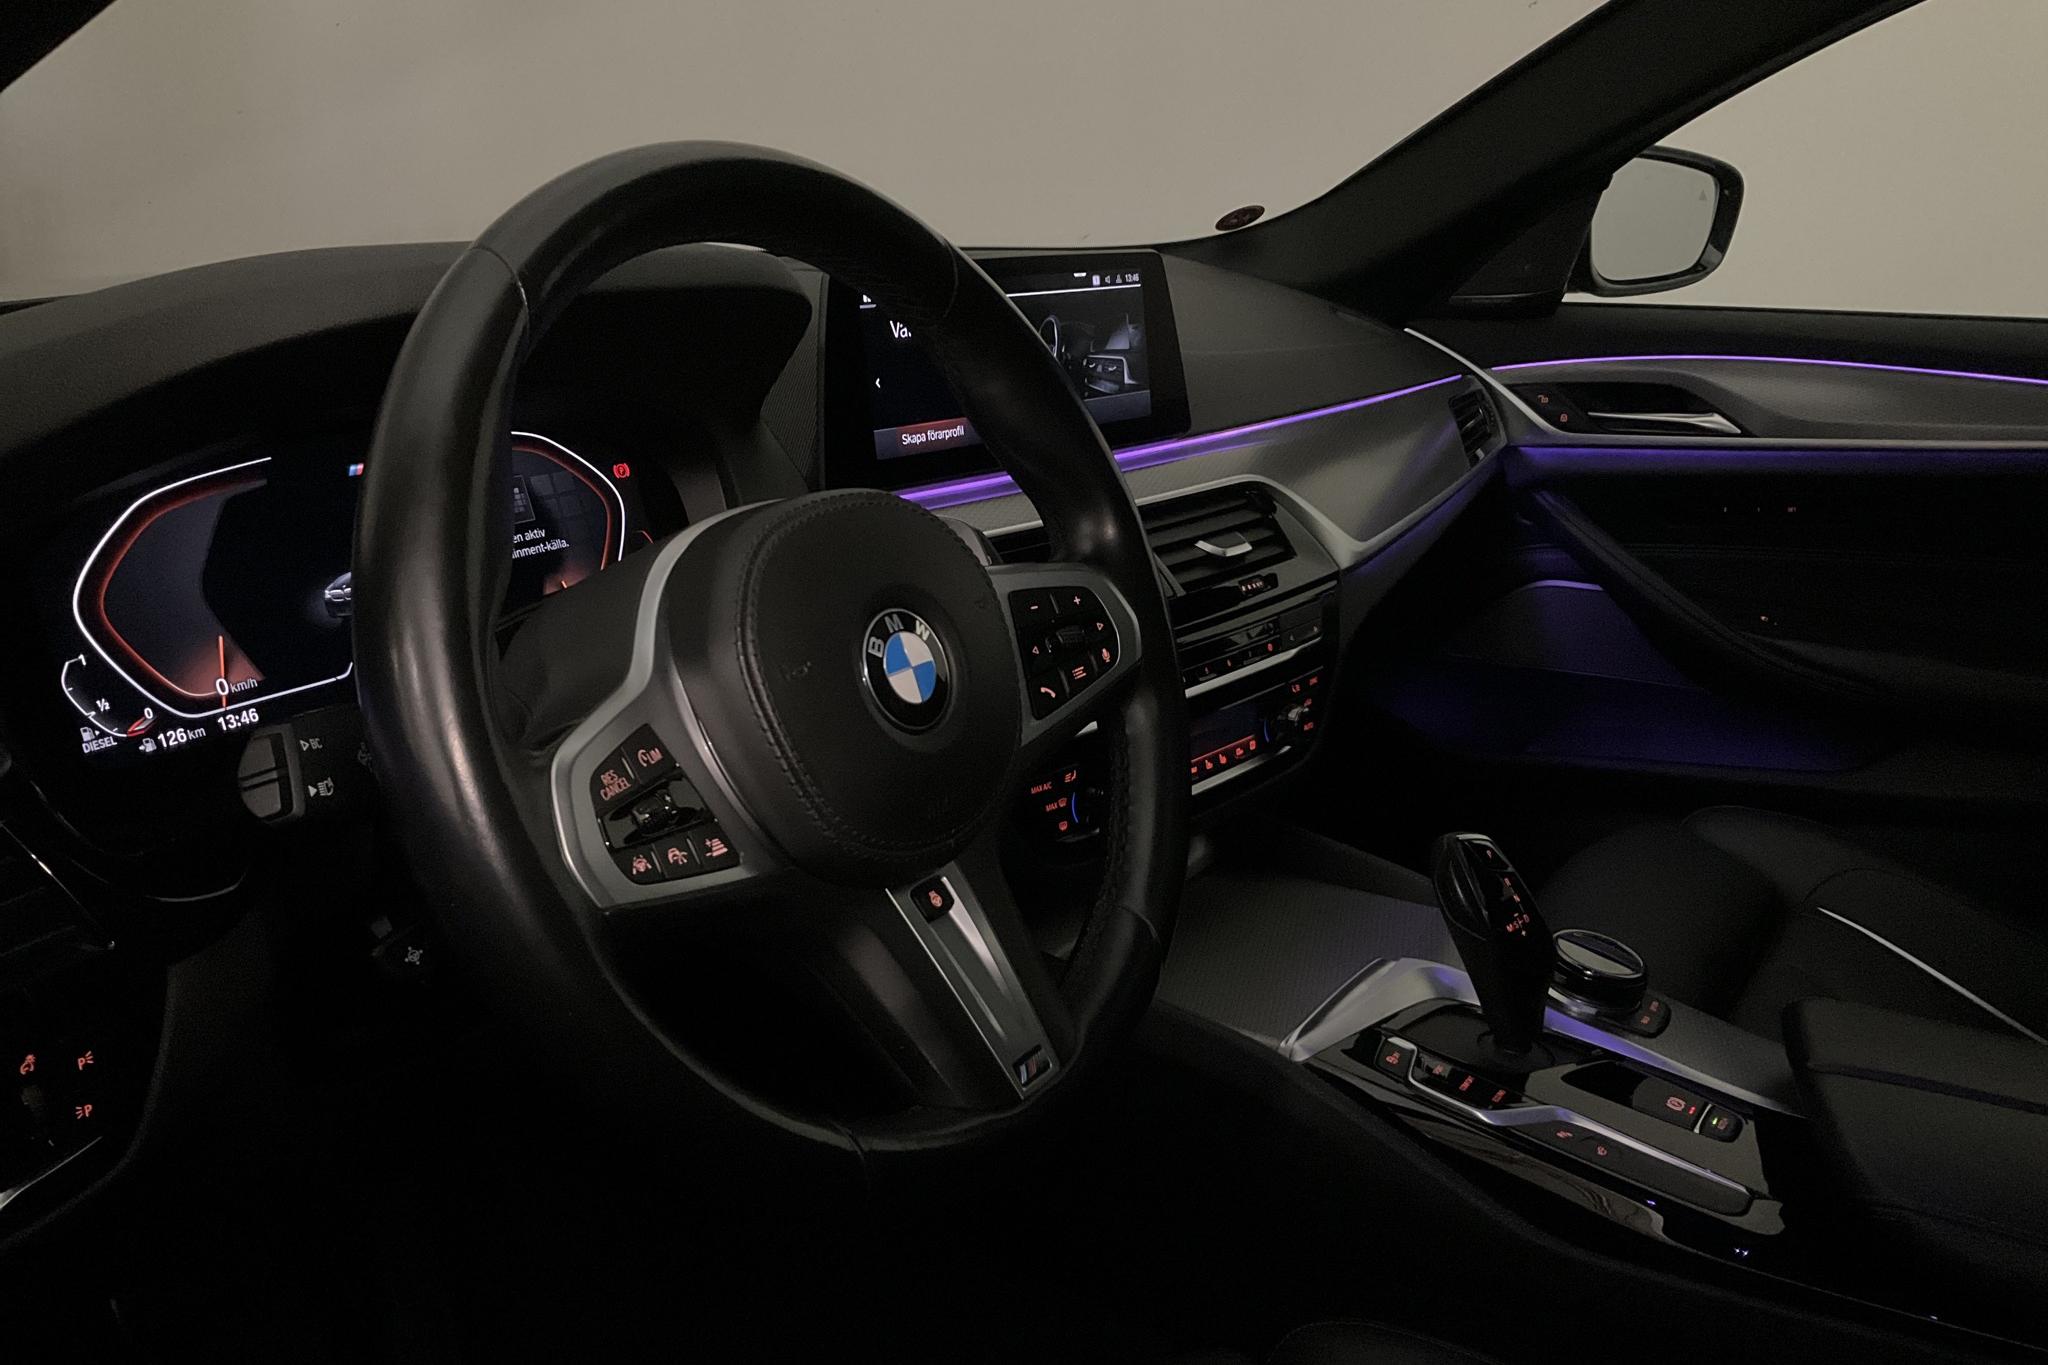 BMW 520d xDrive Touring MHEV, G31 (190hk) - 88 730 km - Automatic - black - 2020